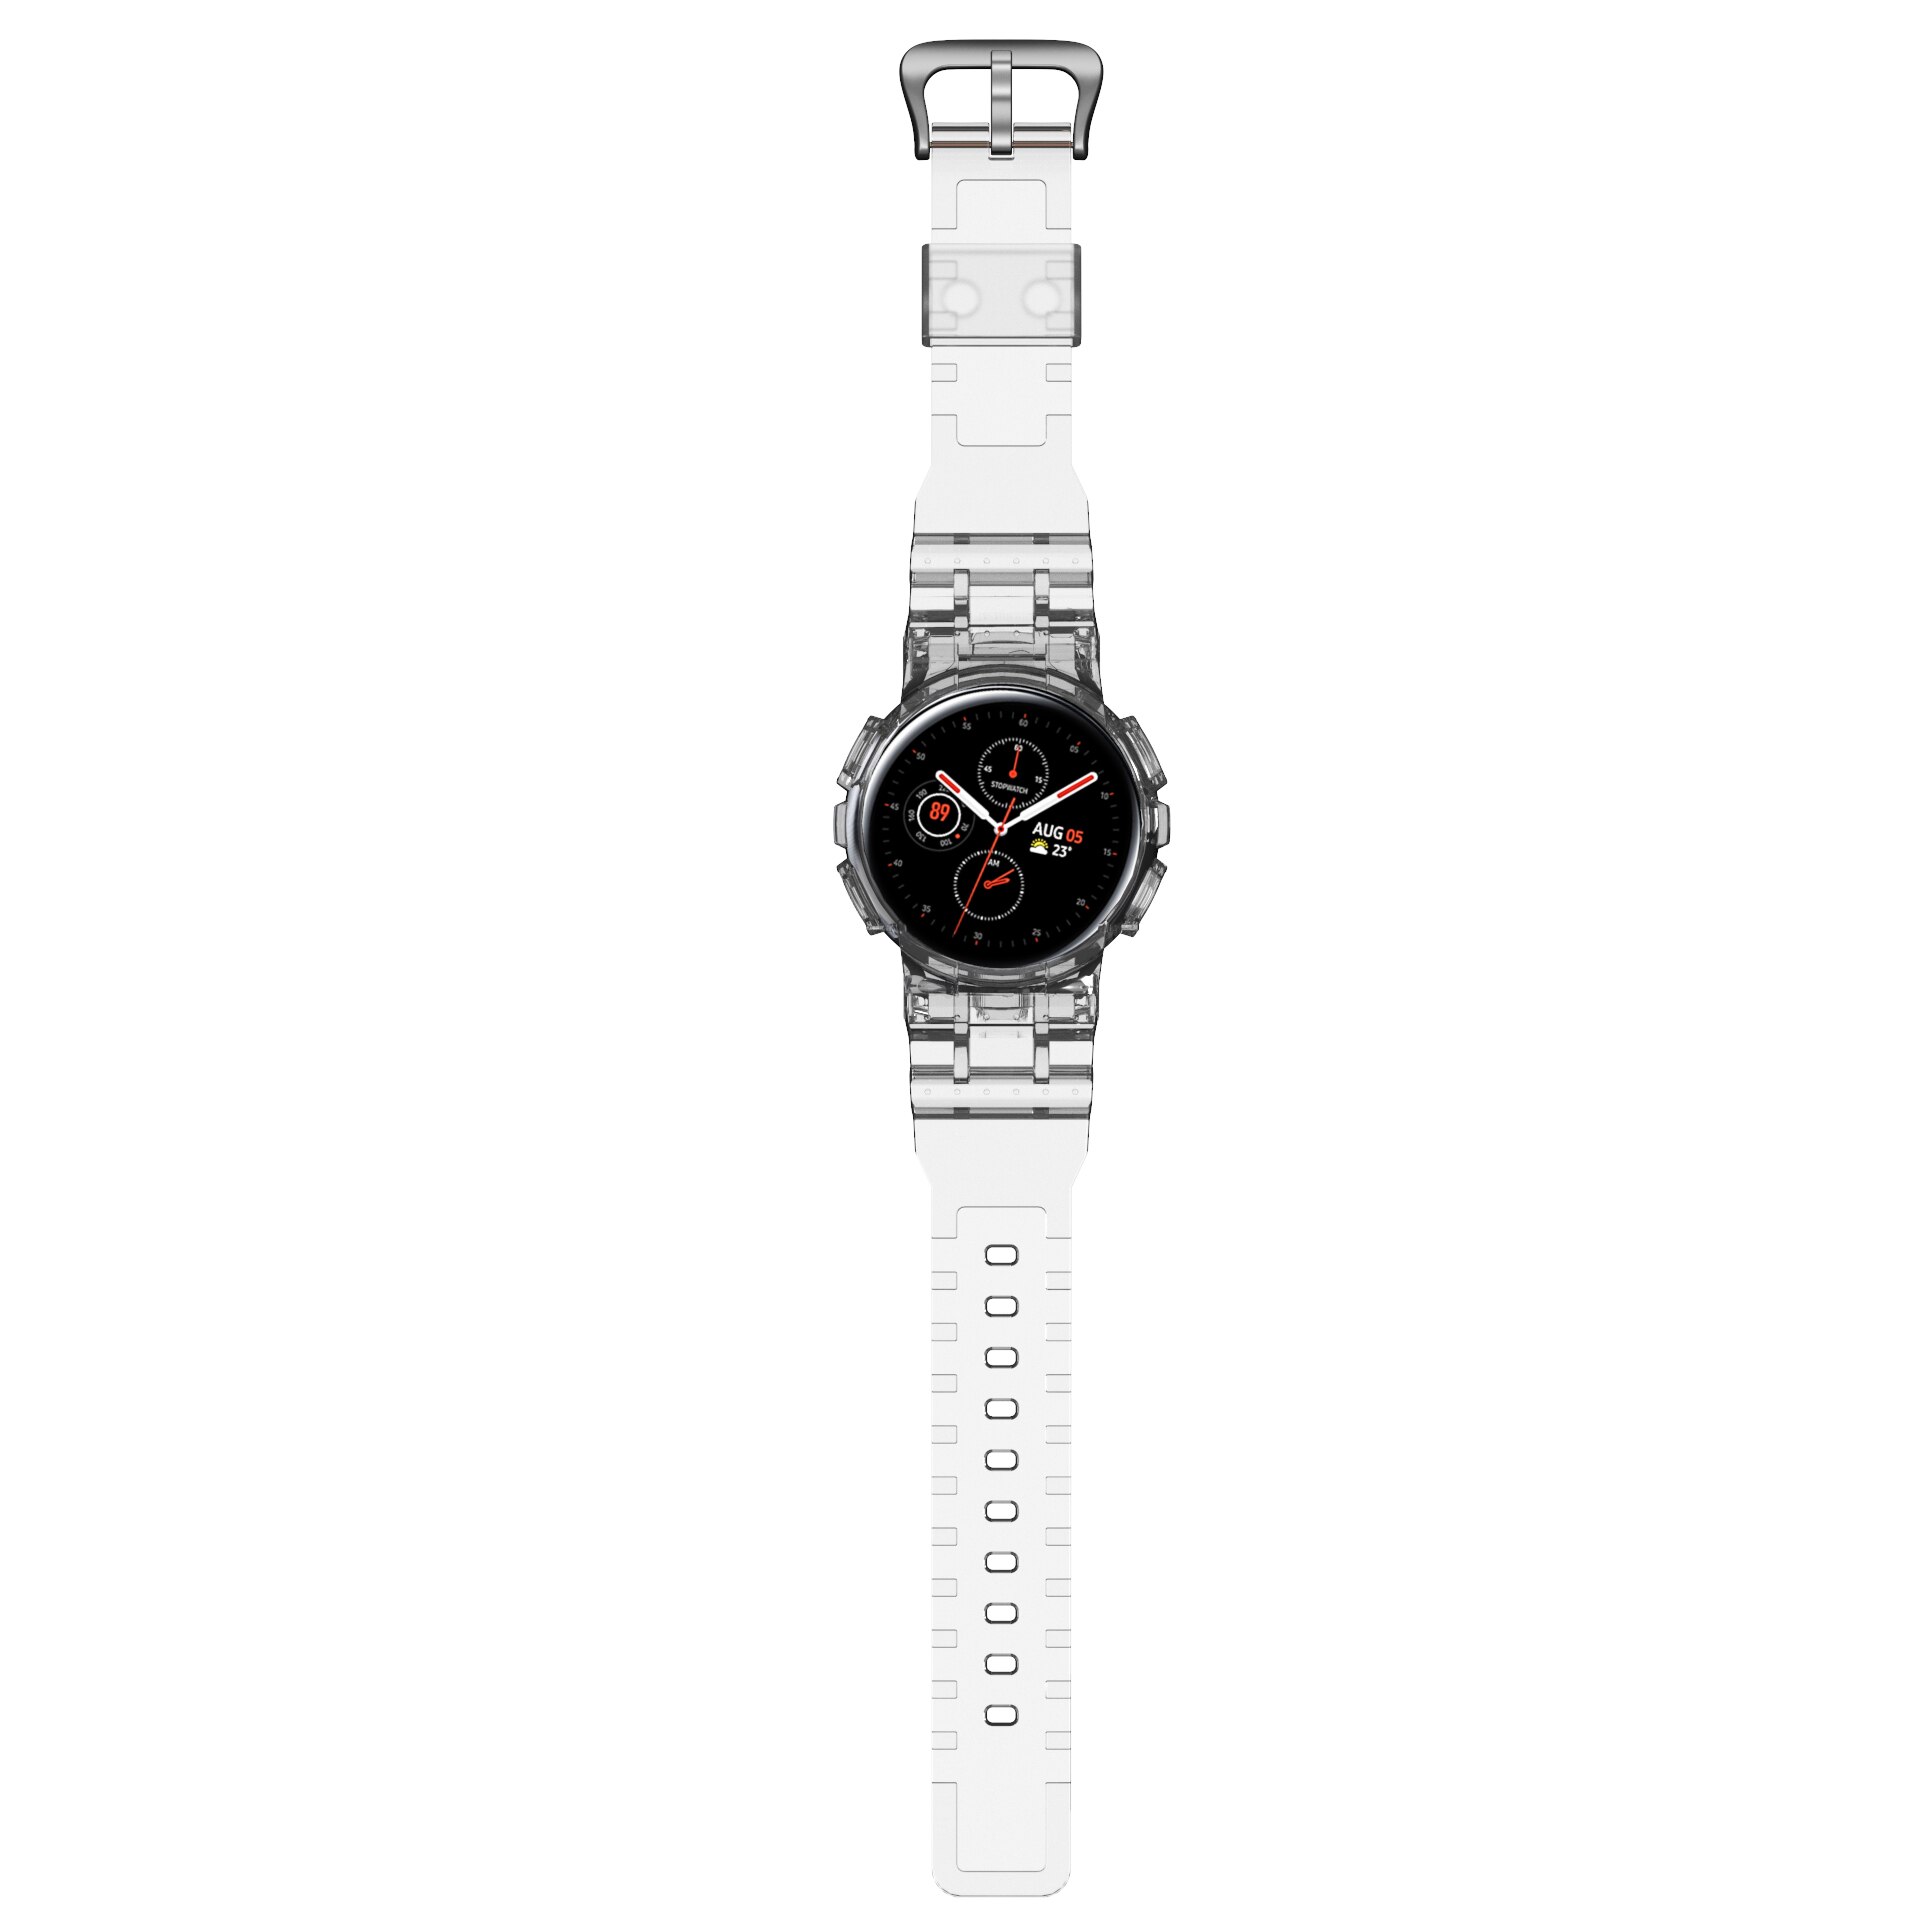 Anbest Duidelijk Horloge Band Met Beschermende Case Vervanging Voor Samsung Galaxy Actieve 2 44Mm Soft Tpu Voor Galaxy actieve 2: Transparent